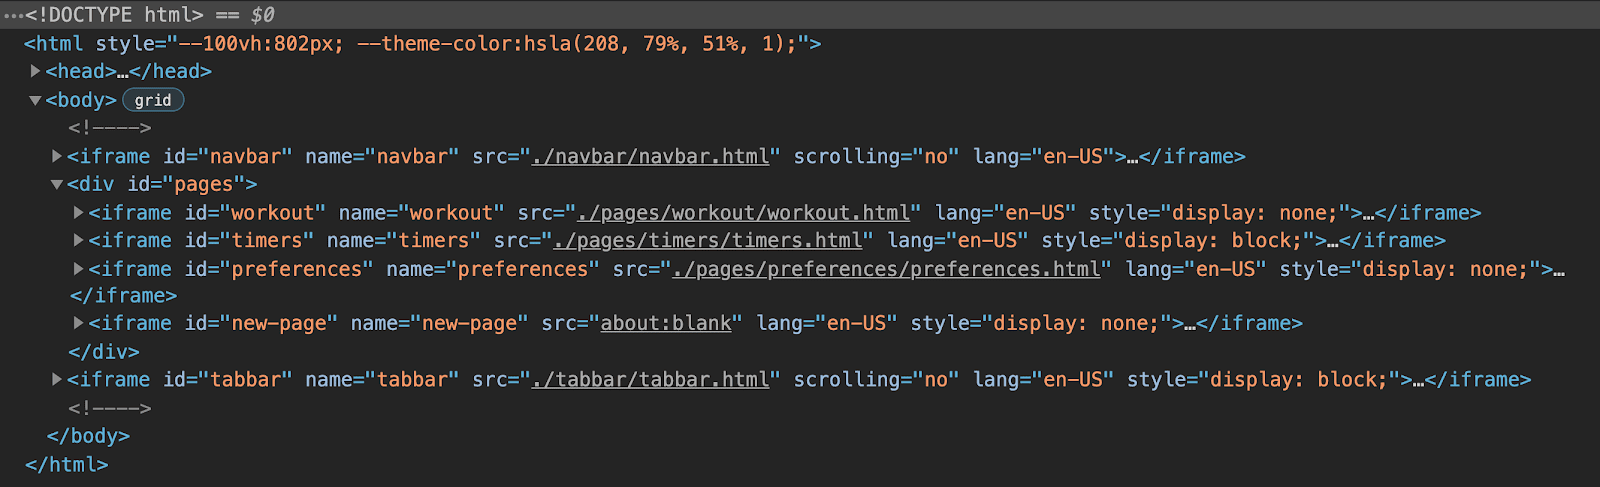 Представление Chrome DevTools HTML-структуры приложения, показывающее, что оно состоит из шести iframe: один для панели навигации, один для панели вкладок и три сгруппированных для каждой страницы приложения, а также последний iframe-заполнитель для динамических страниц.